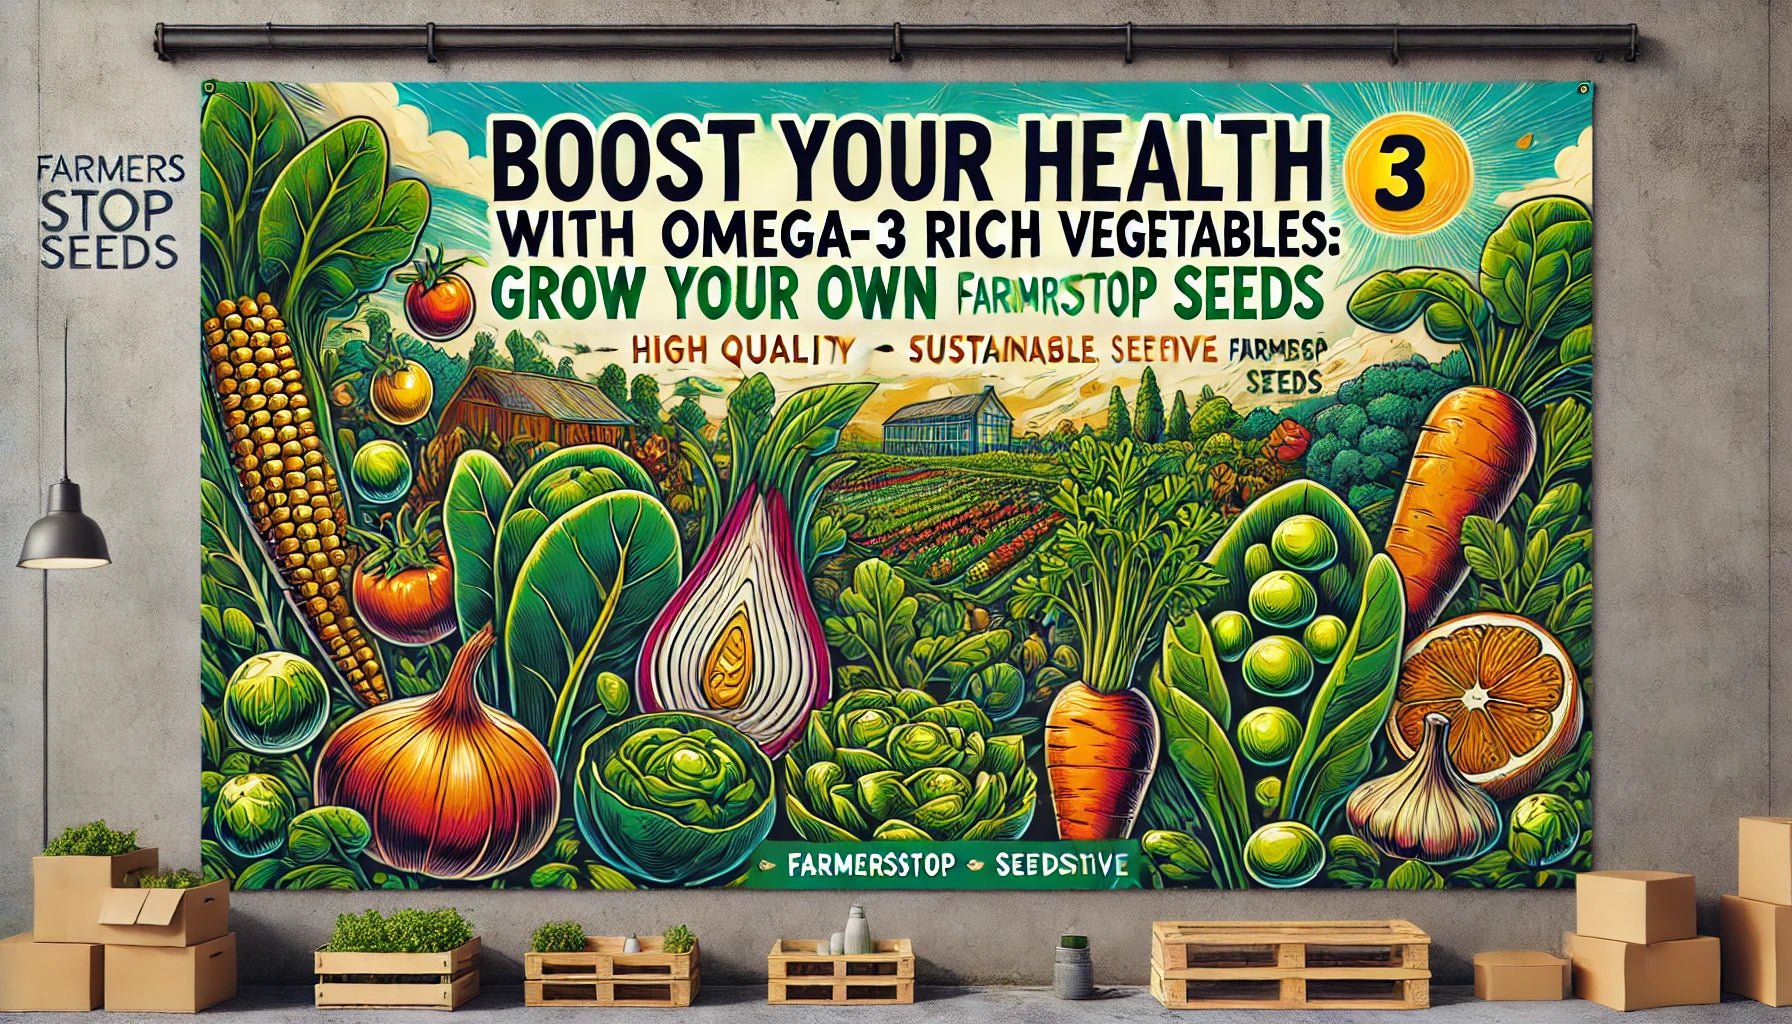 Omega-3 rich vegetables